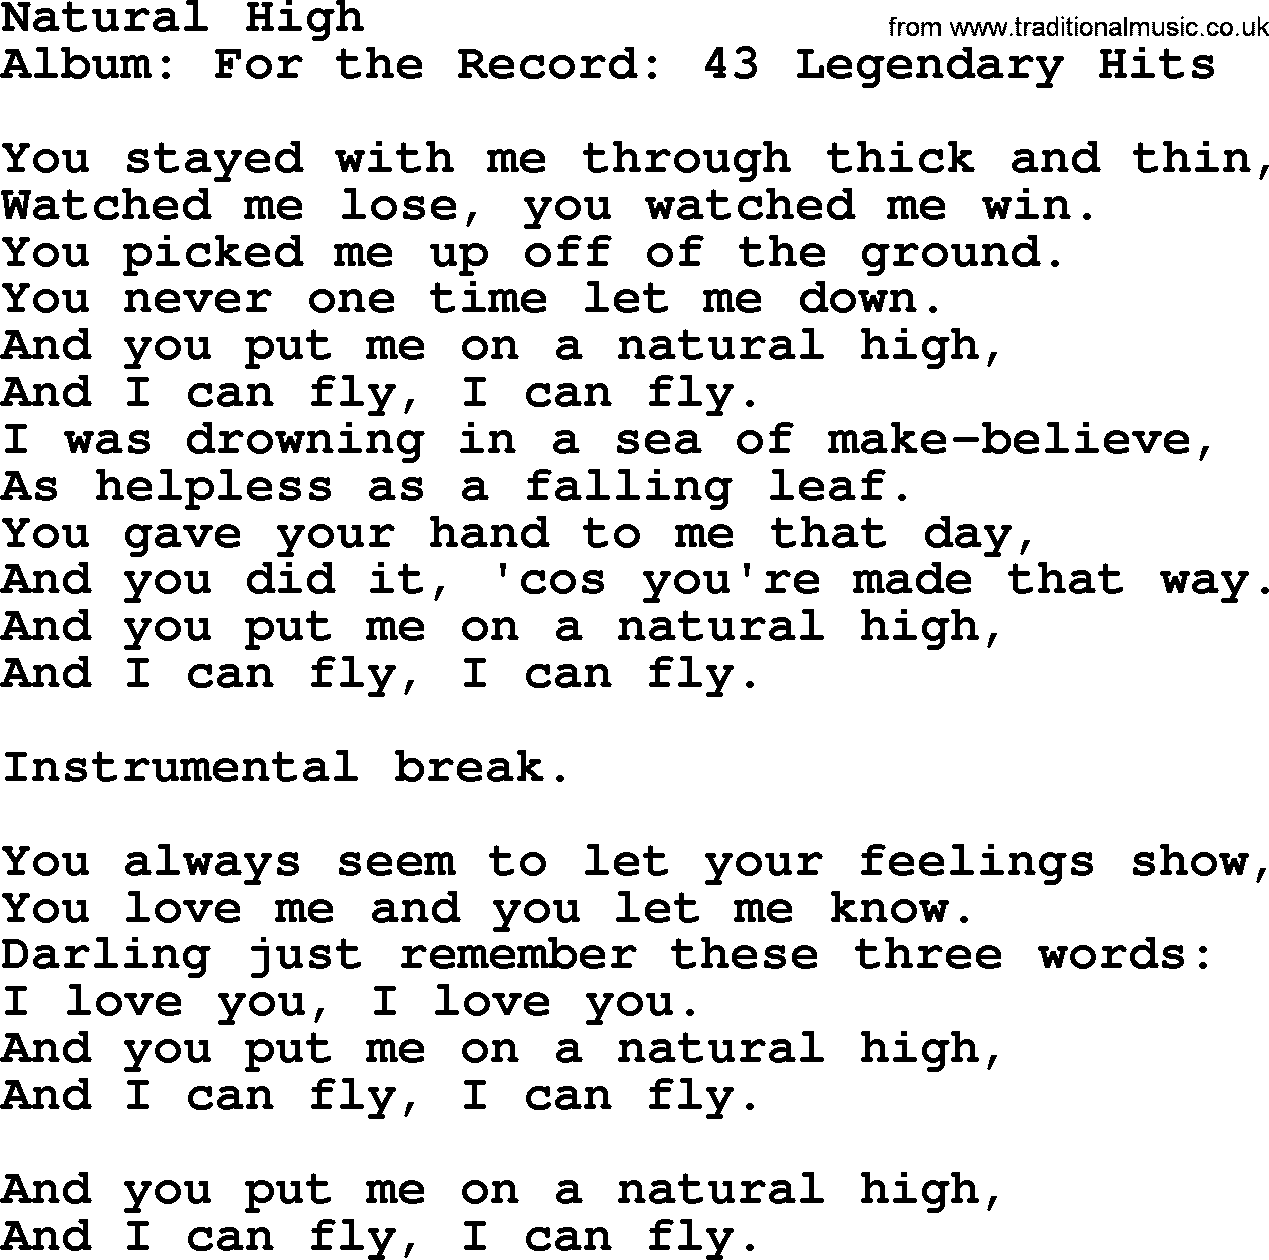 Merle Haggard song: Natural High, lyrics.